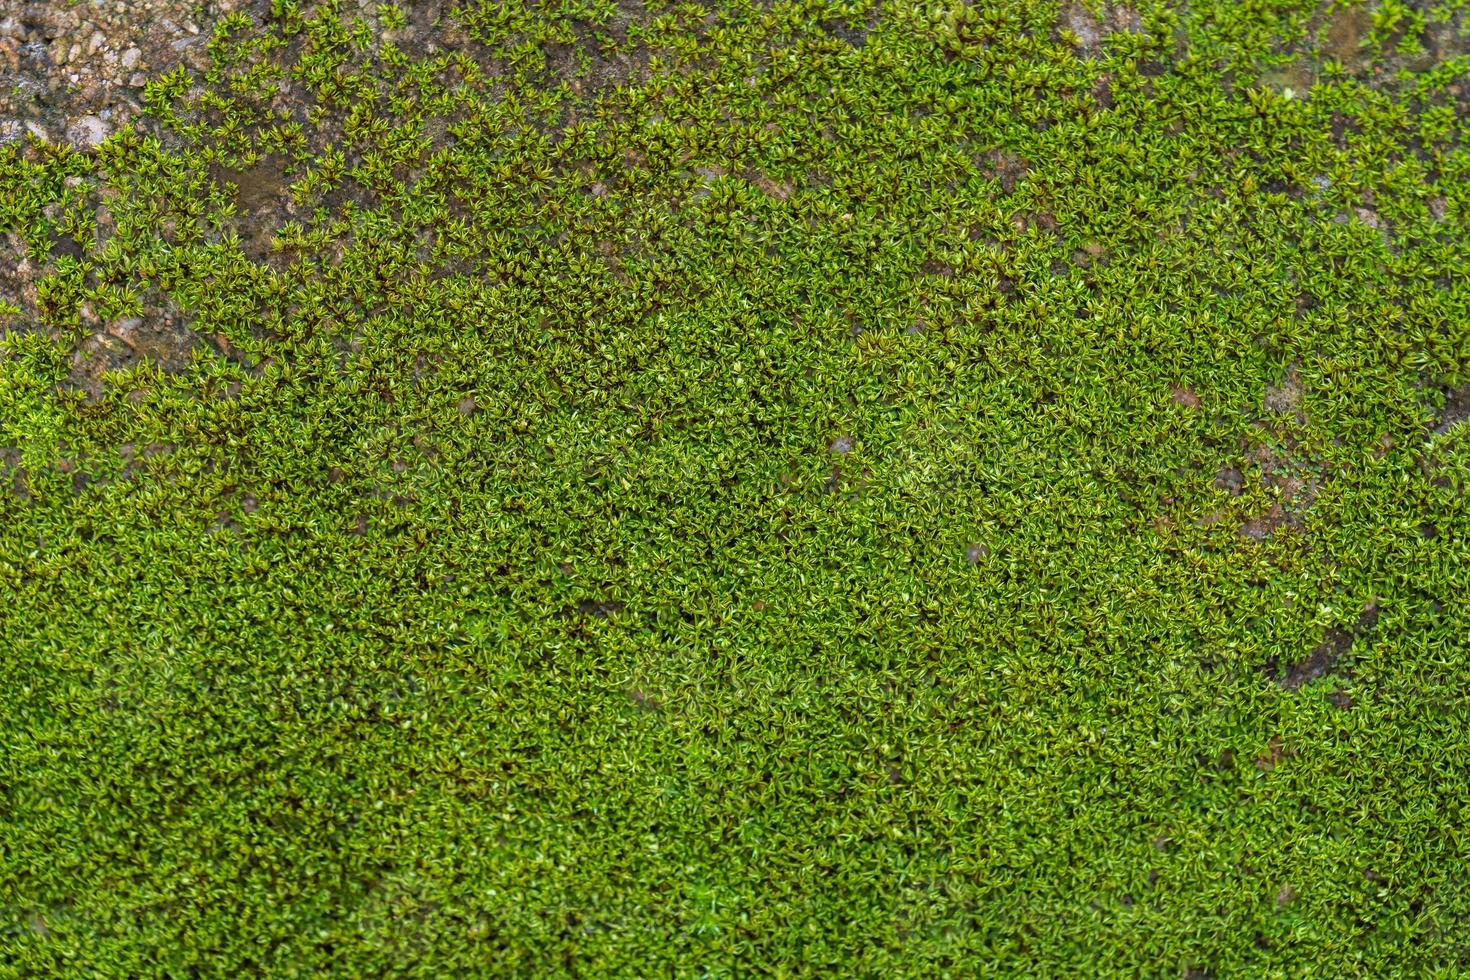 fond de mousse verte rainurée dans la nature photo